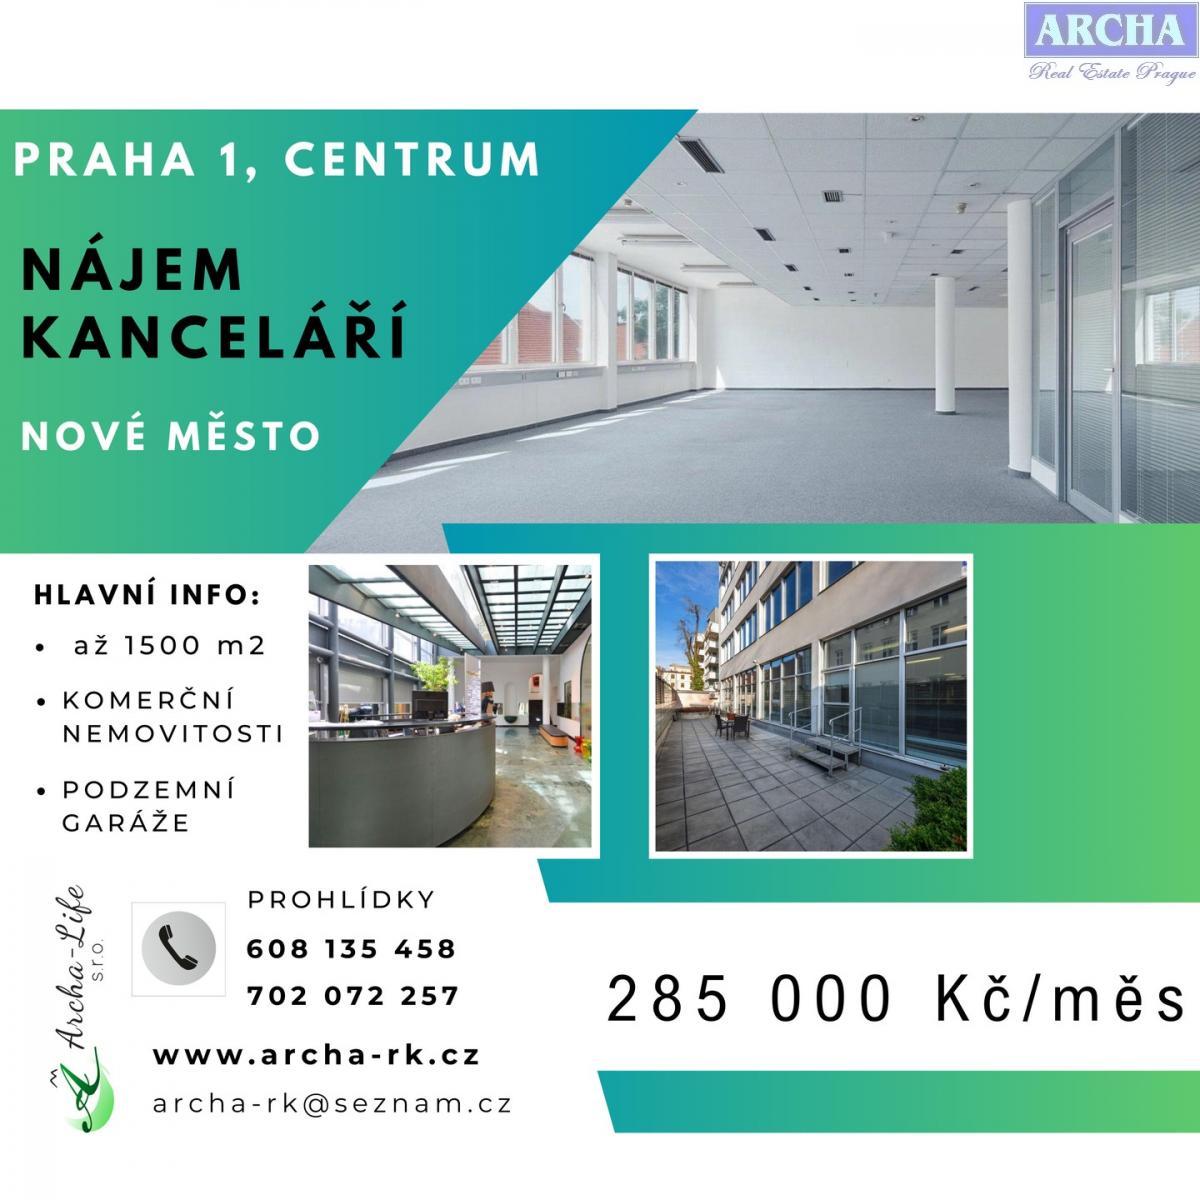 Nájem kanceláří až 1500 m2, Praha 1 Centrum